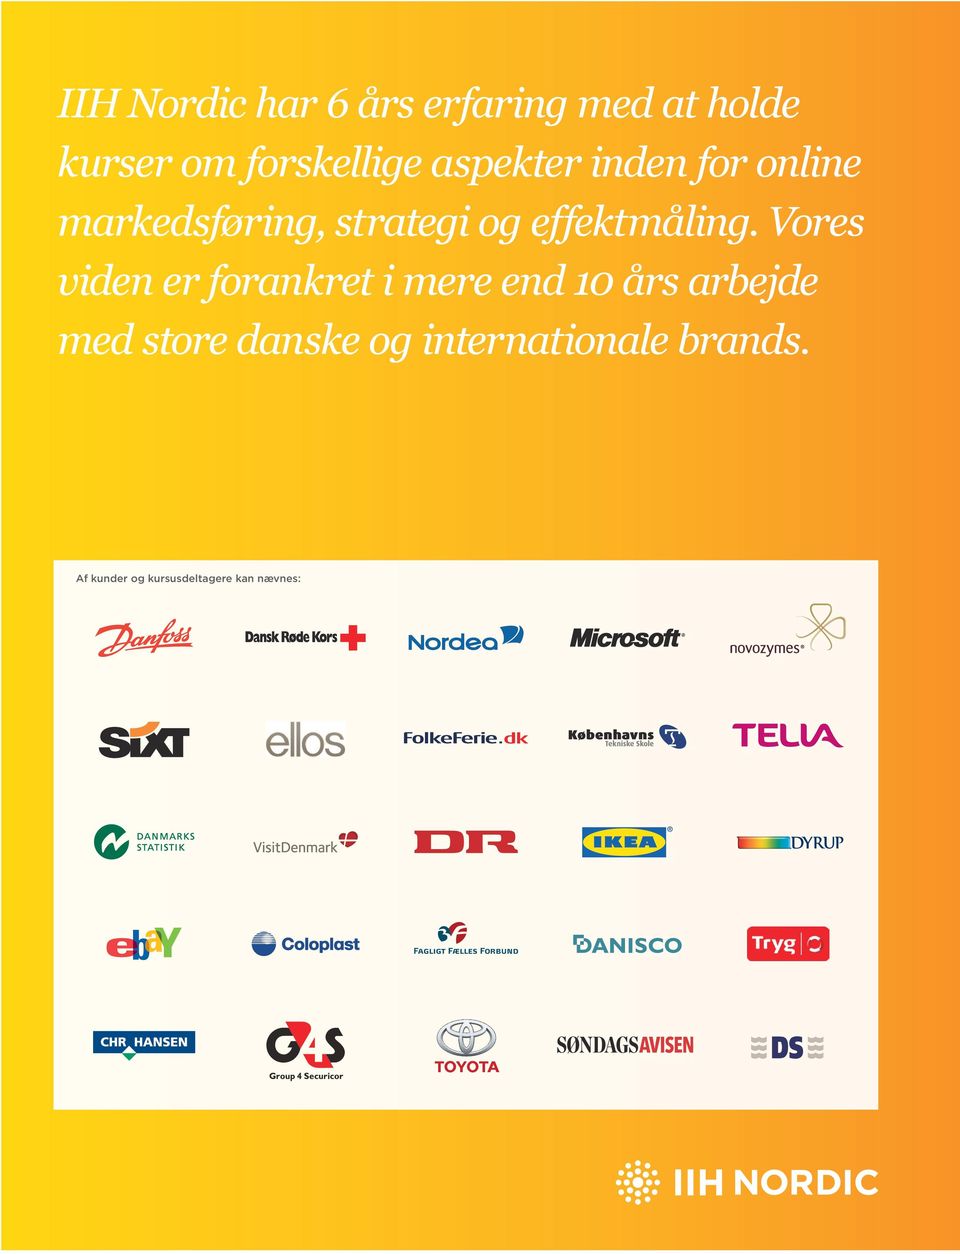 Vores viden er forankret i mere end 10 års arbejde med store danske og internationale brands.